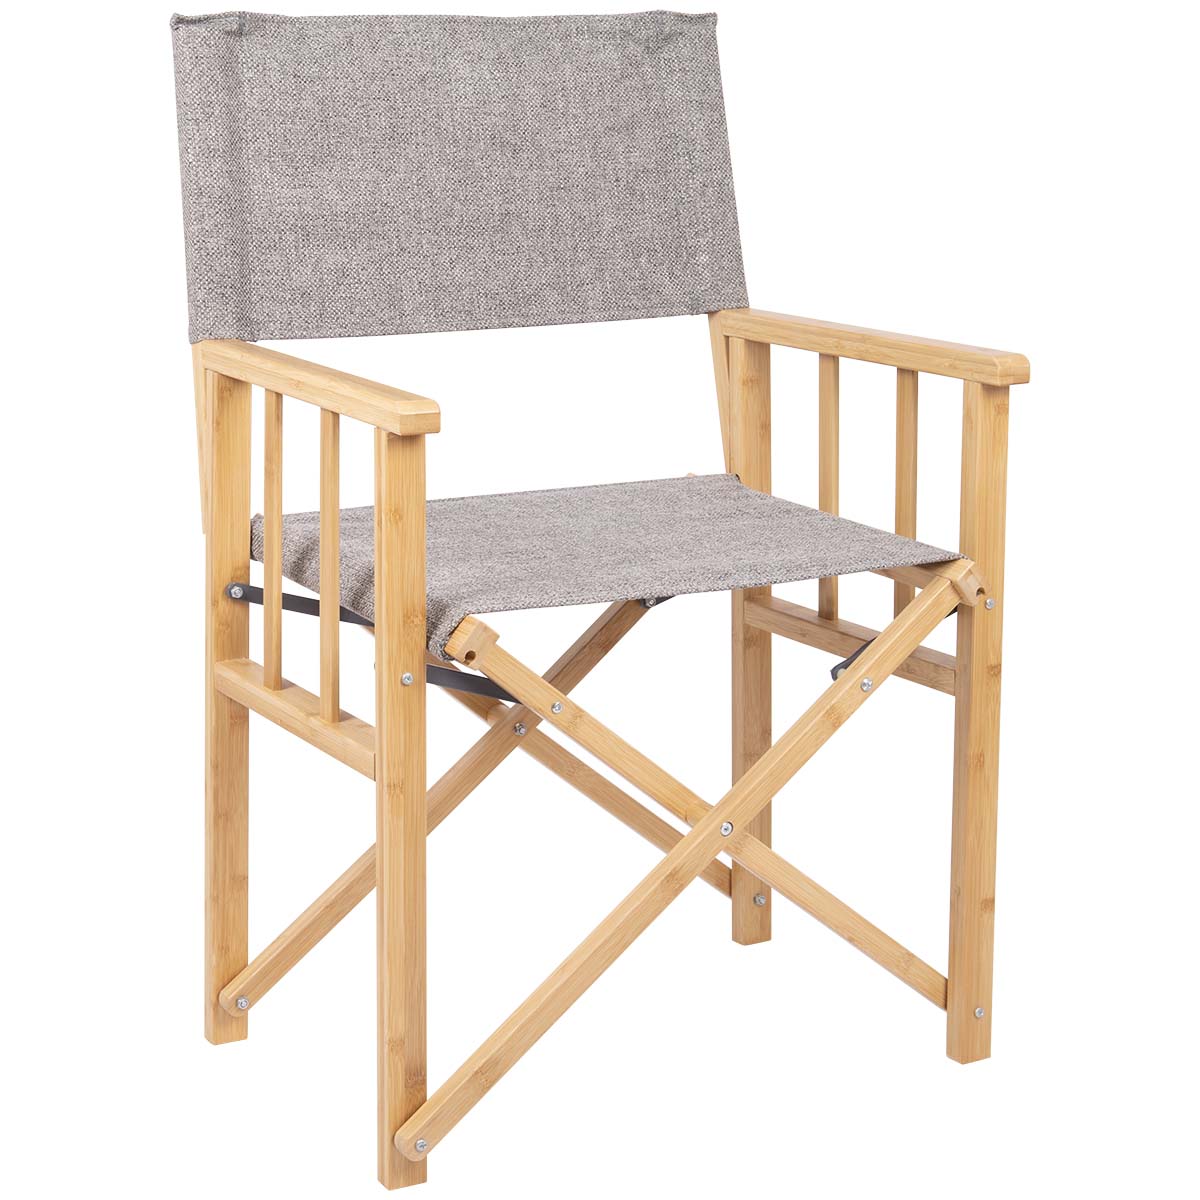 1267225 Een stijlvolle regisseursstoel uit de Urban Outdoor collectie. De stoel beschikt over een stevig bamboe frame. De bekleding is gemaakt van Nika welke een linnen look heeft. Ideaal voor gebruik aan tafel of buiten voor de tent. Compact en eenvoudig in te klappen en daardoor eenvoudig mee te nemen.